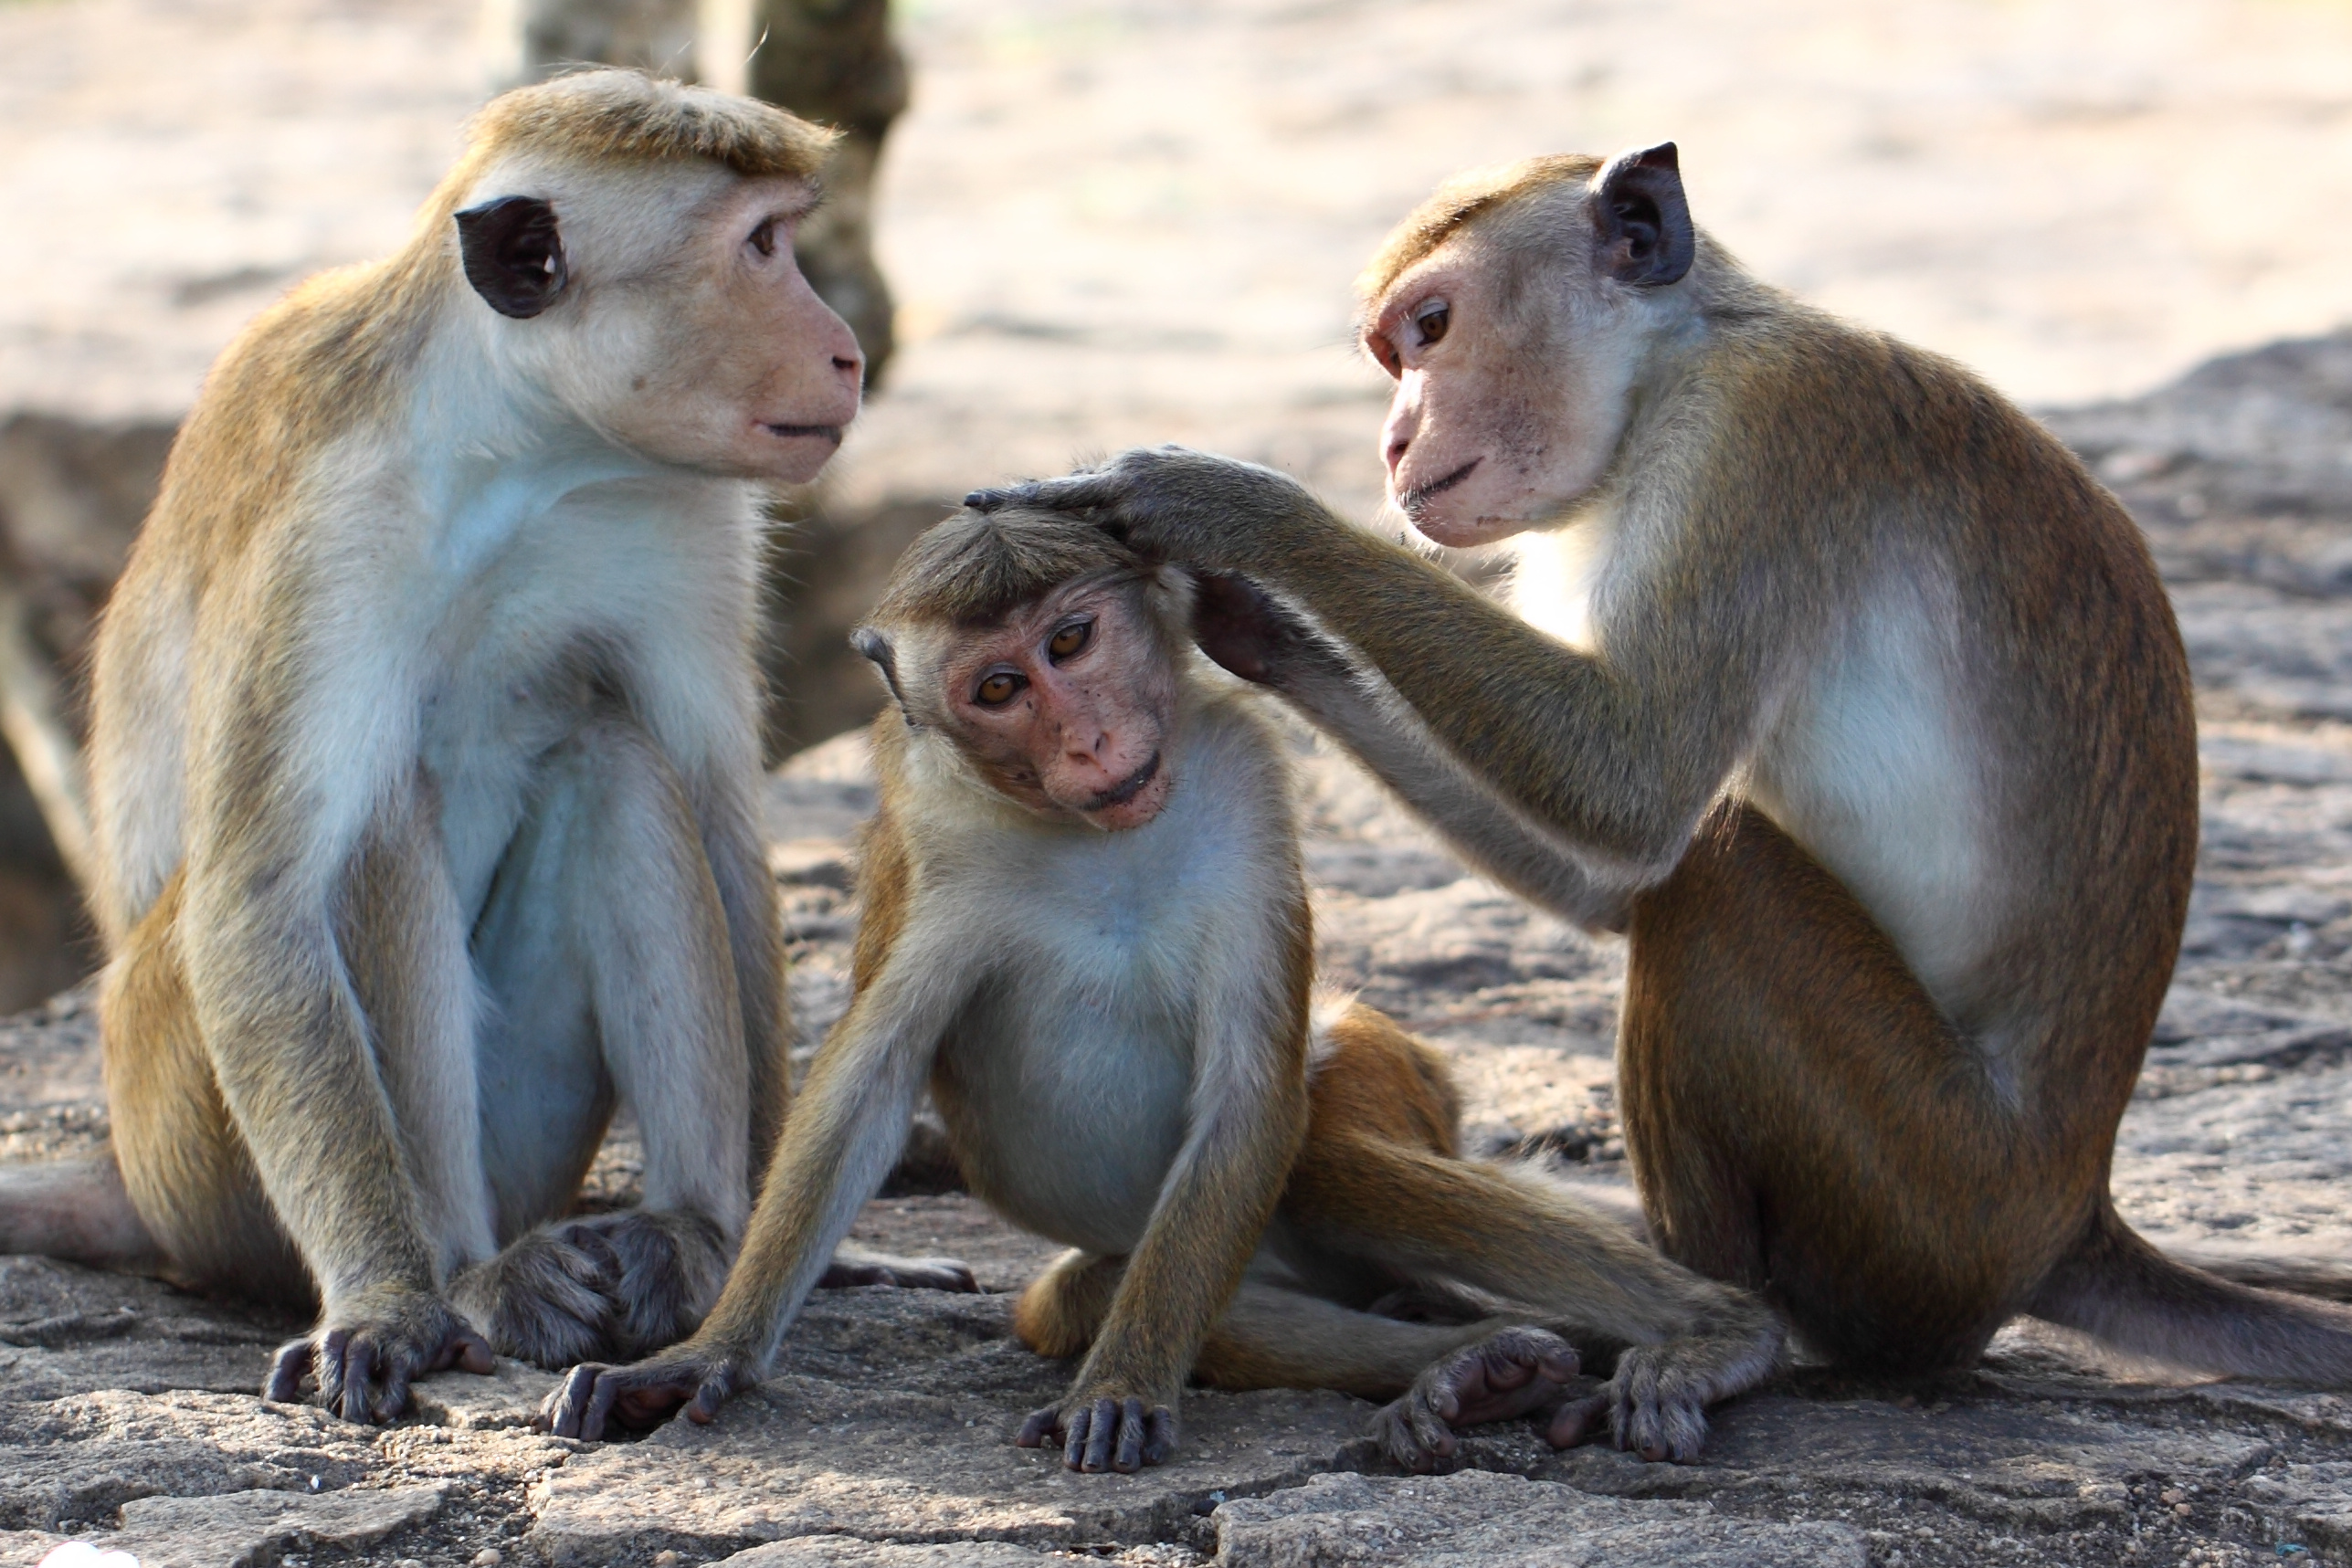 Les singes rhésus, Macaca mulatta, mesurent aux alentours de 60 centimètres de long et vivent en Asie. © Leochen66, Adobe Stock